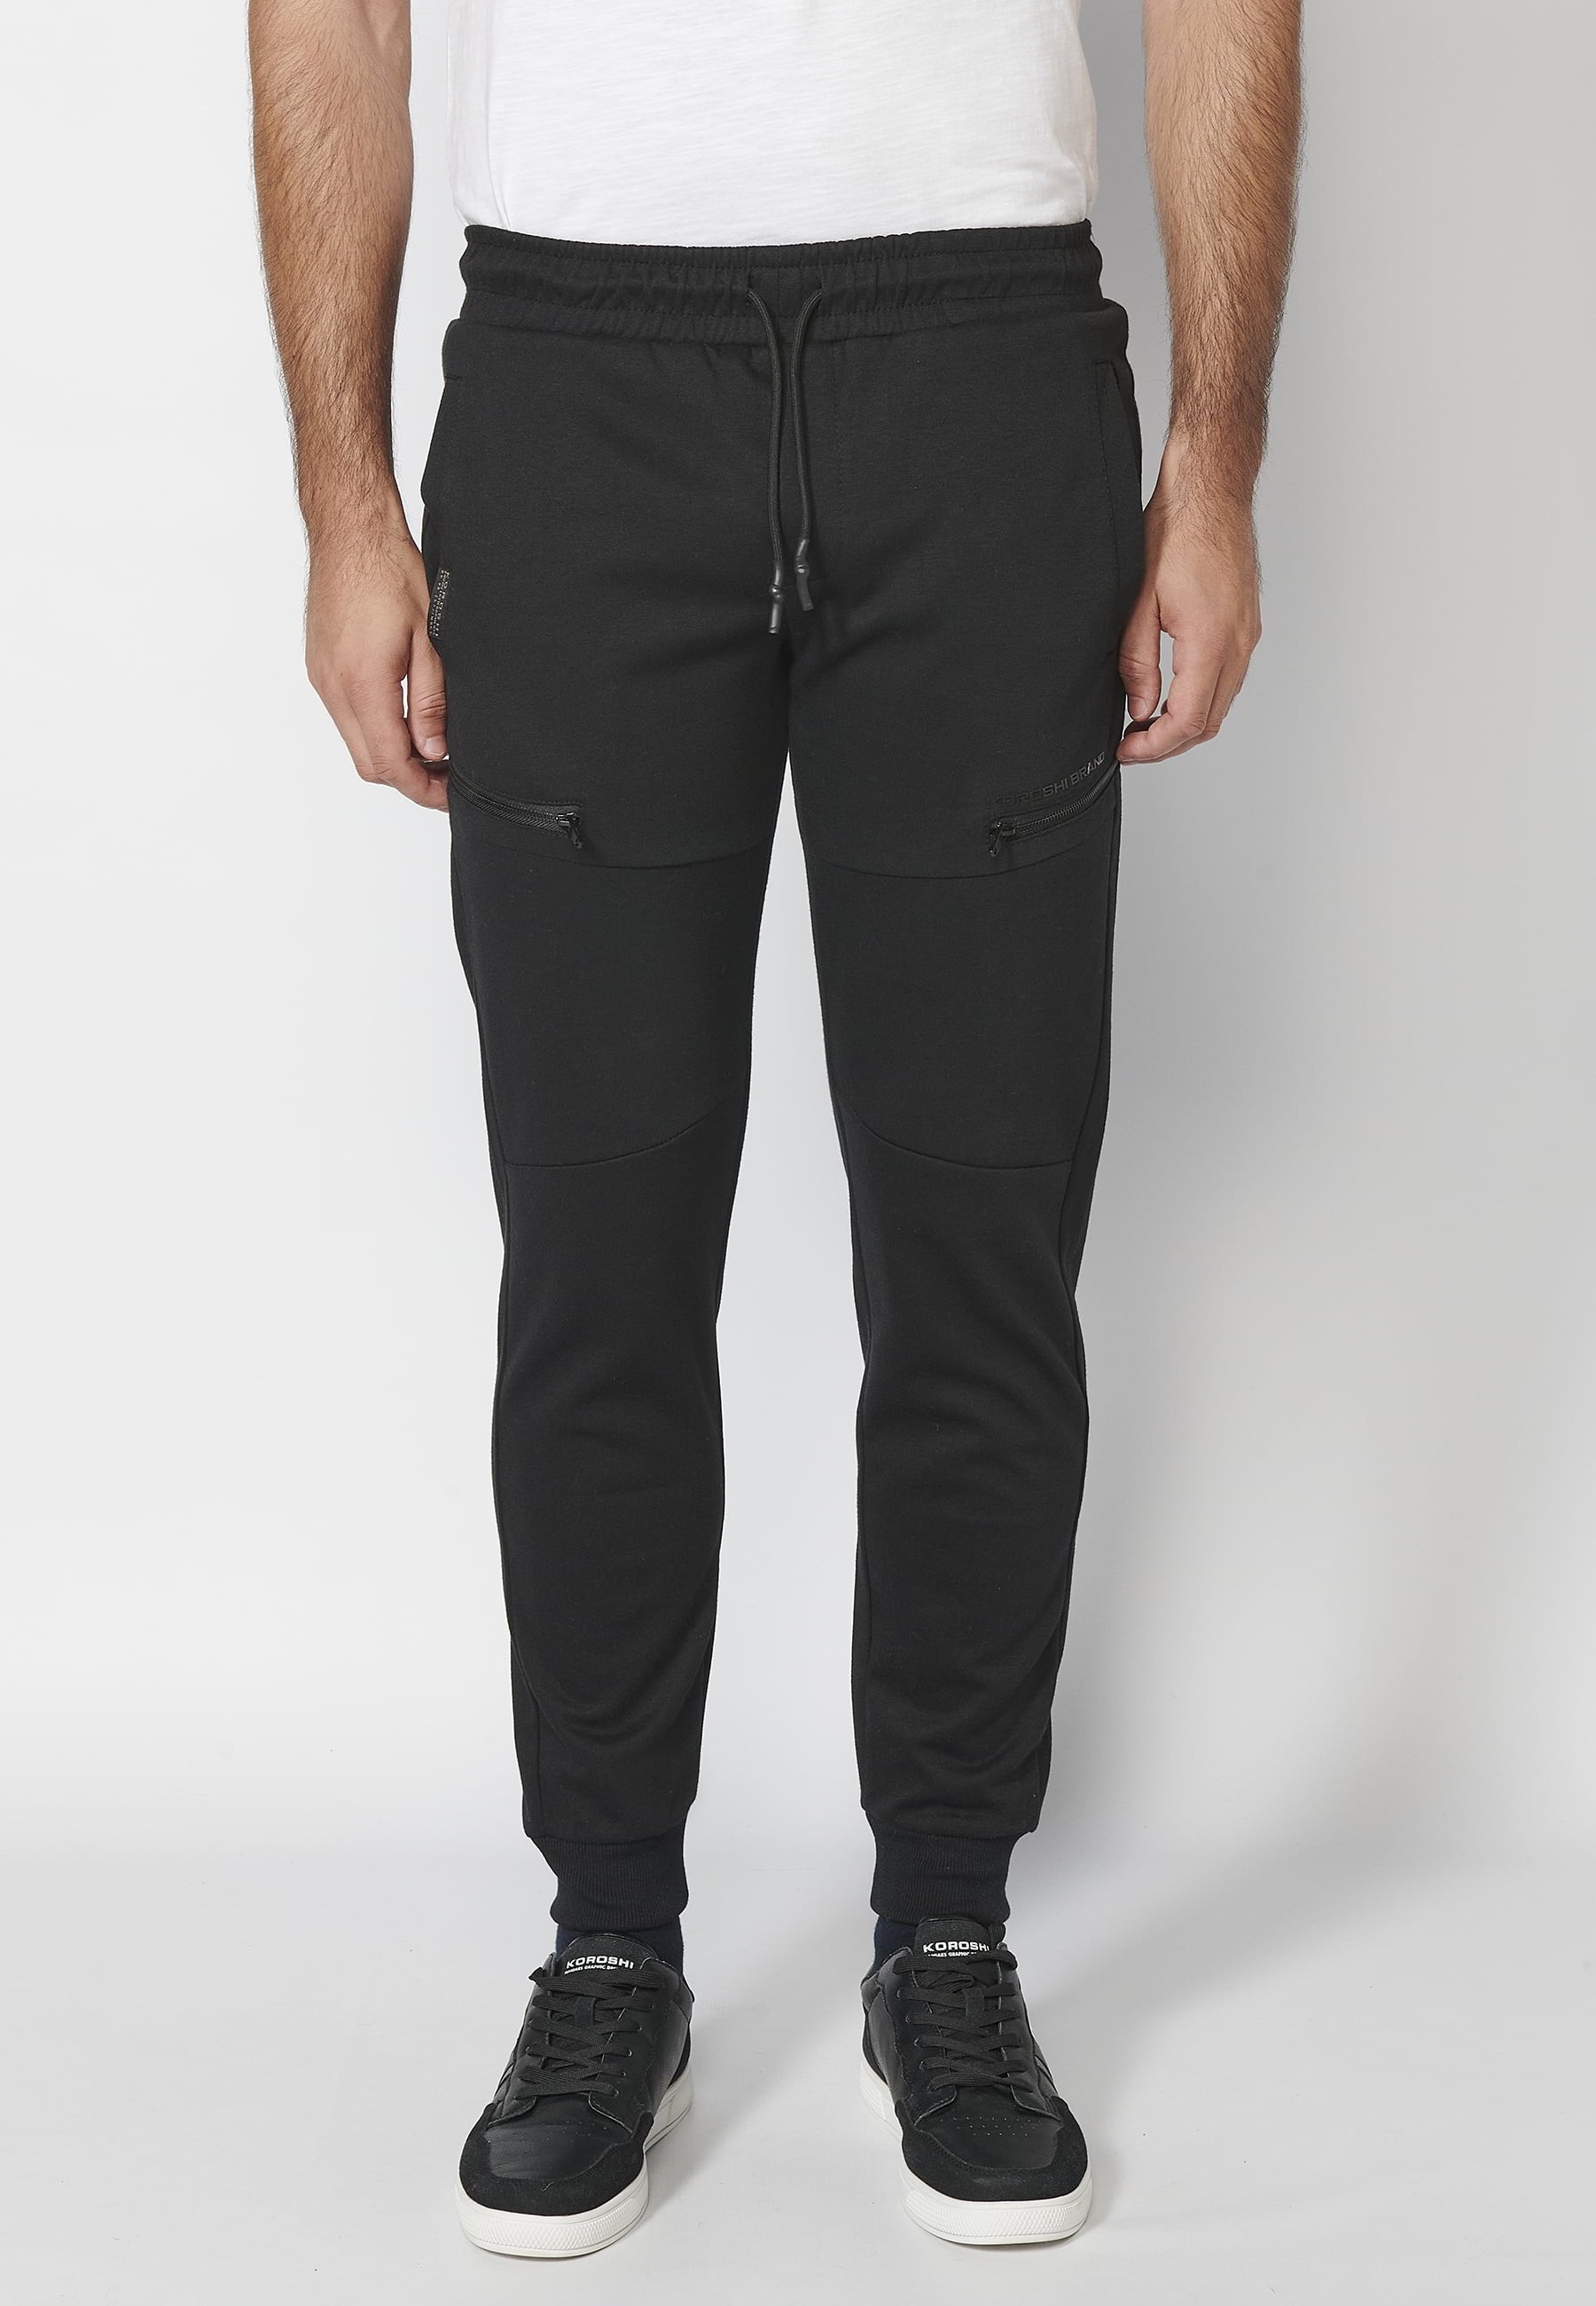 Pantalons llarg jogger amb cintura engomada i cordó amb talls als genolls color Negre per a Home